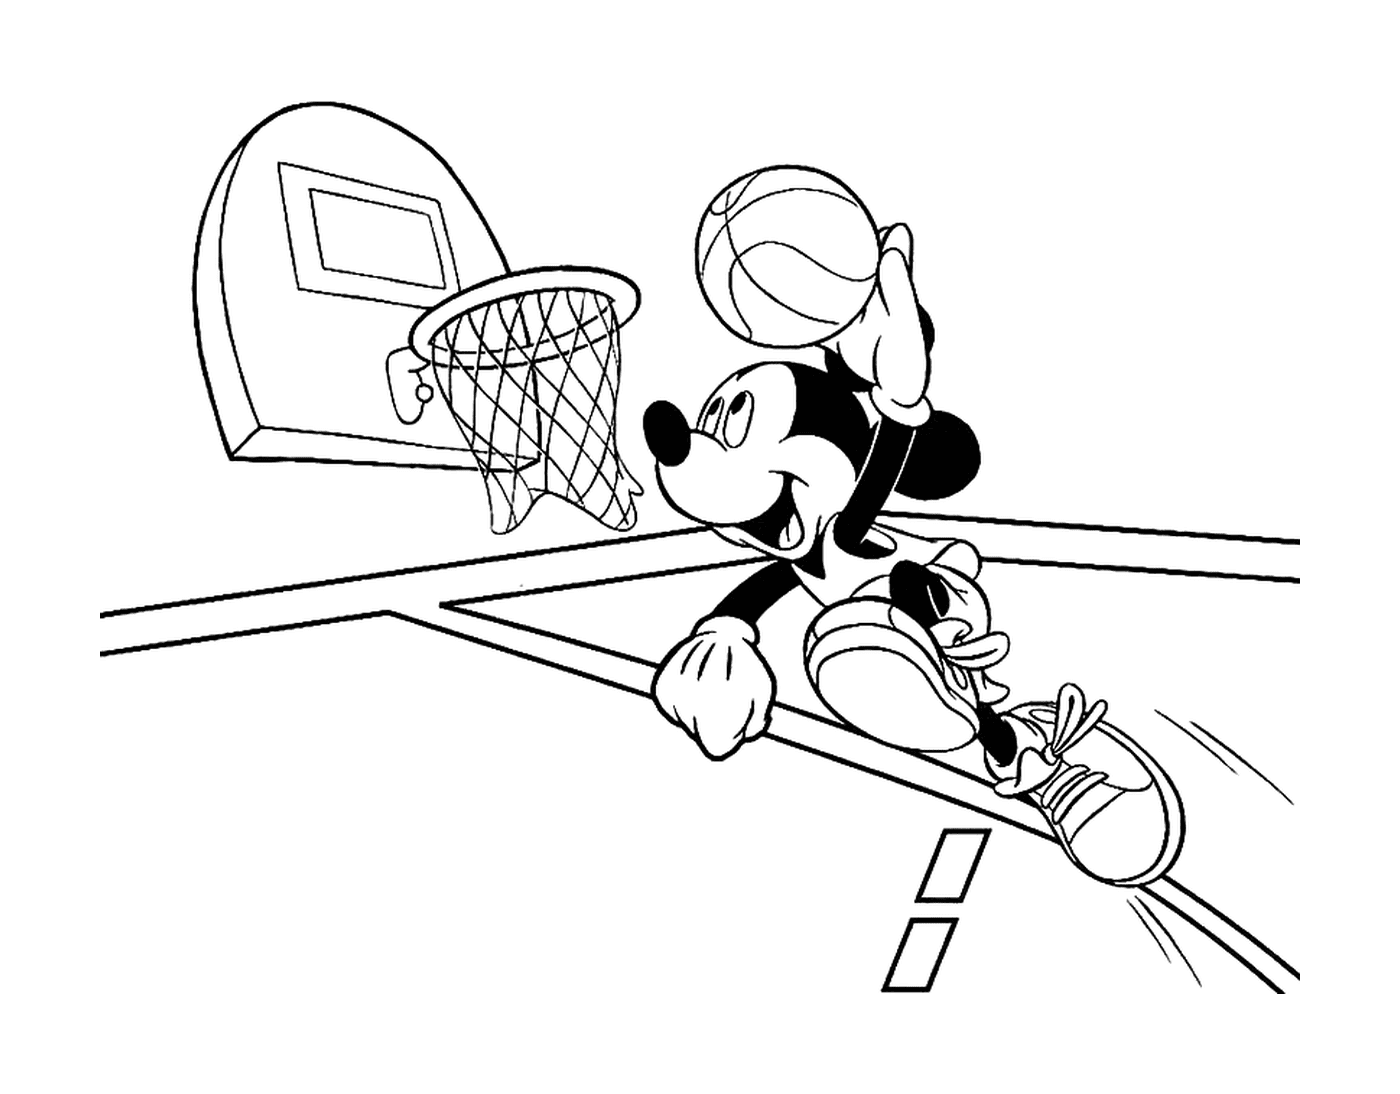  米奇打篮球 